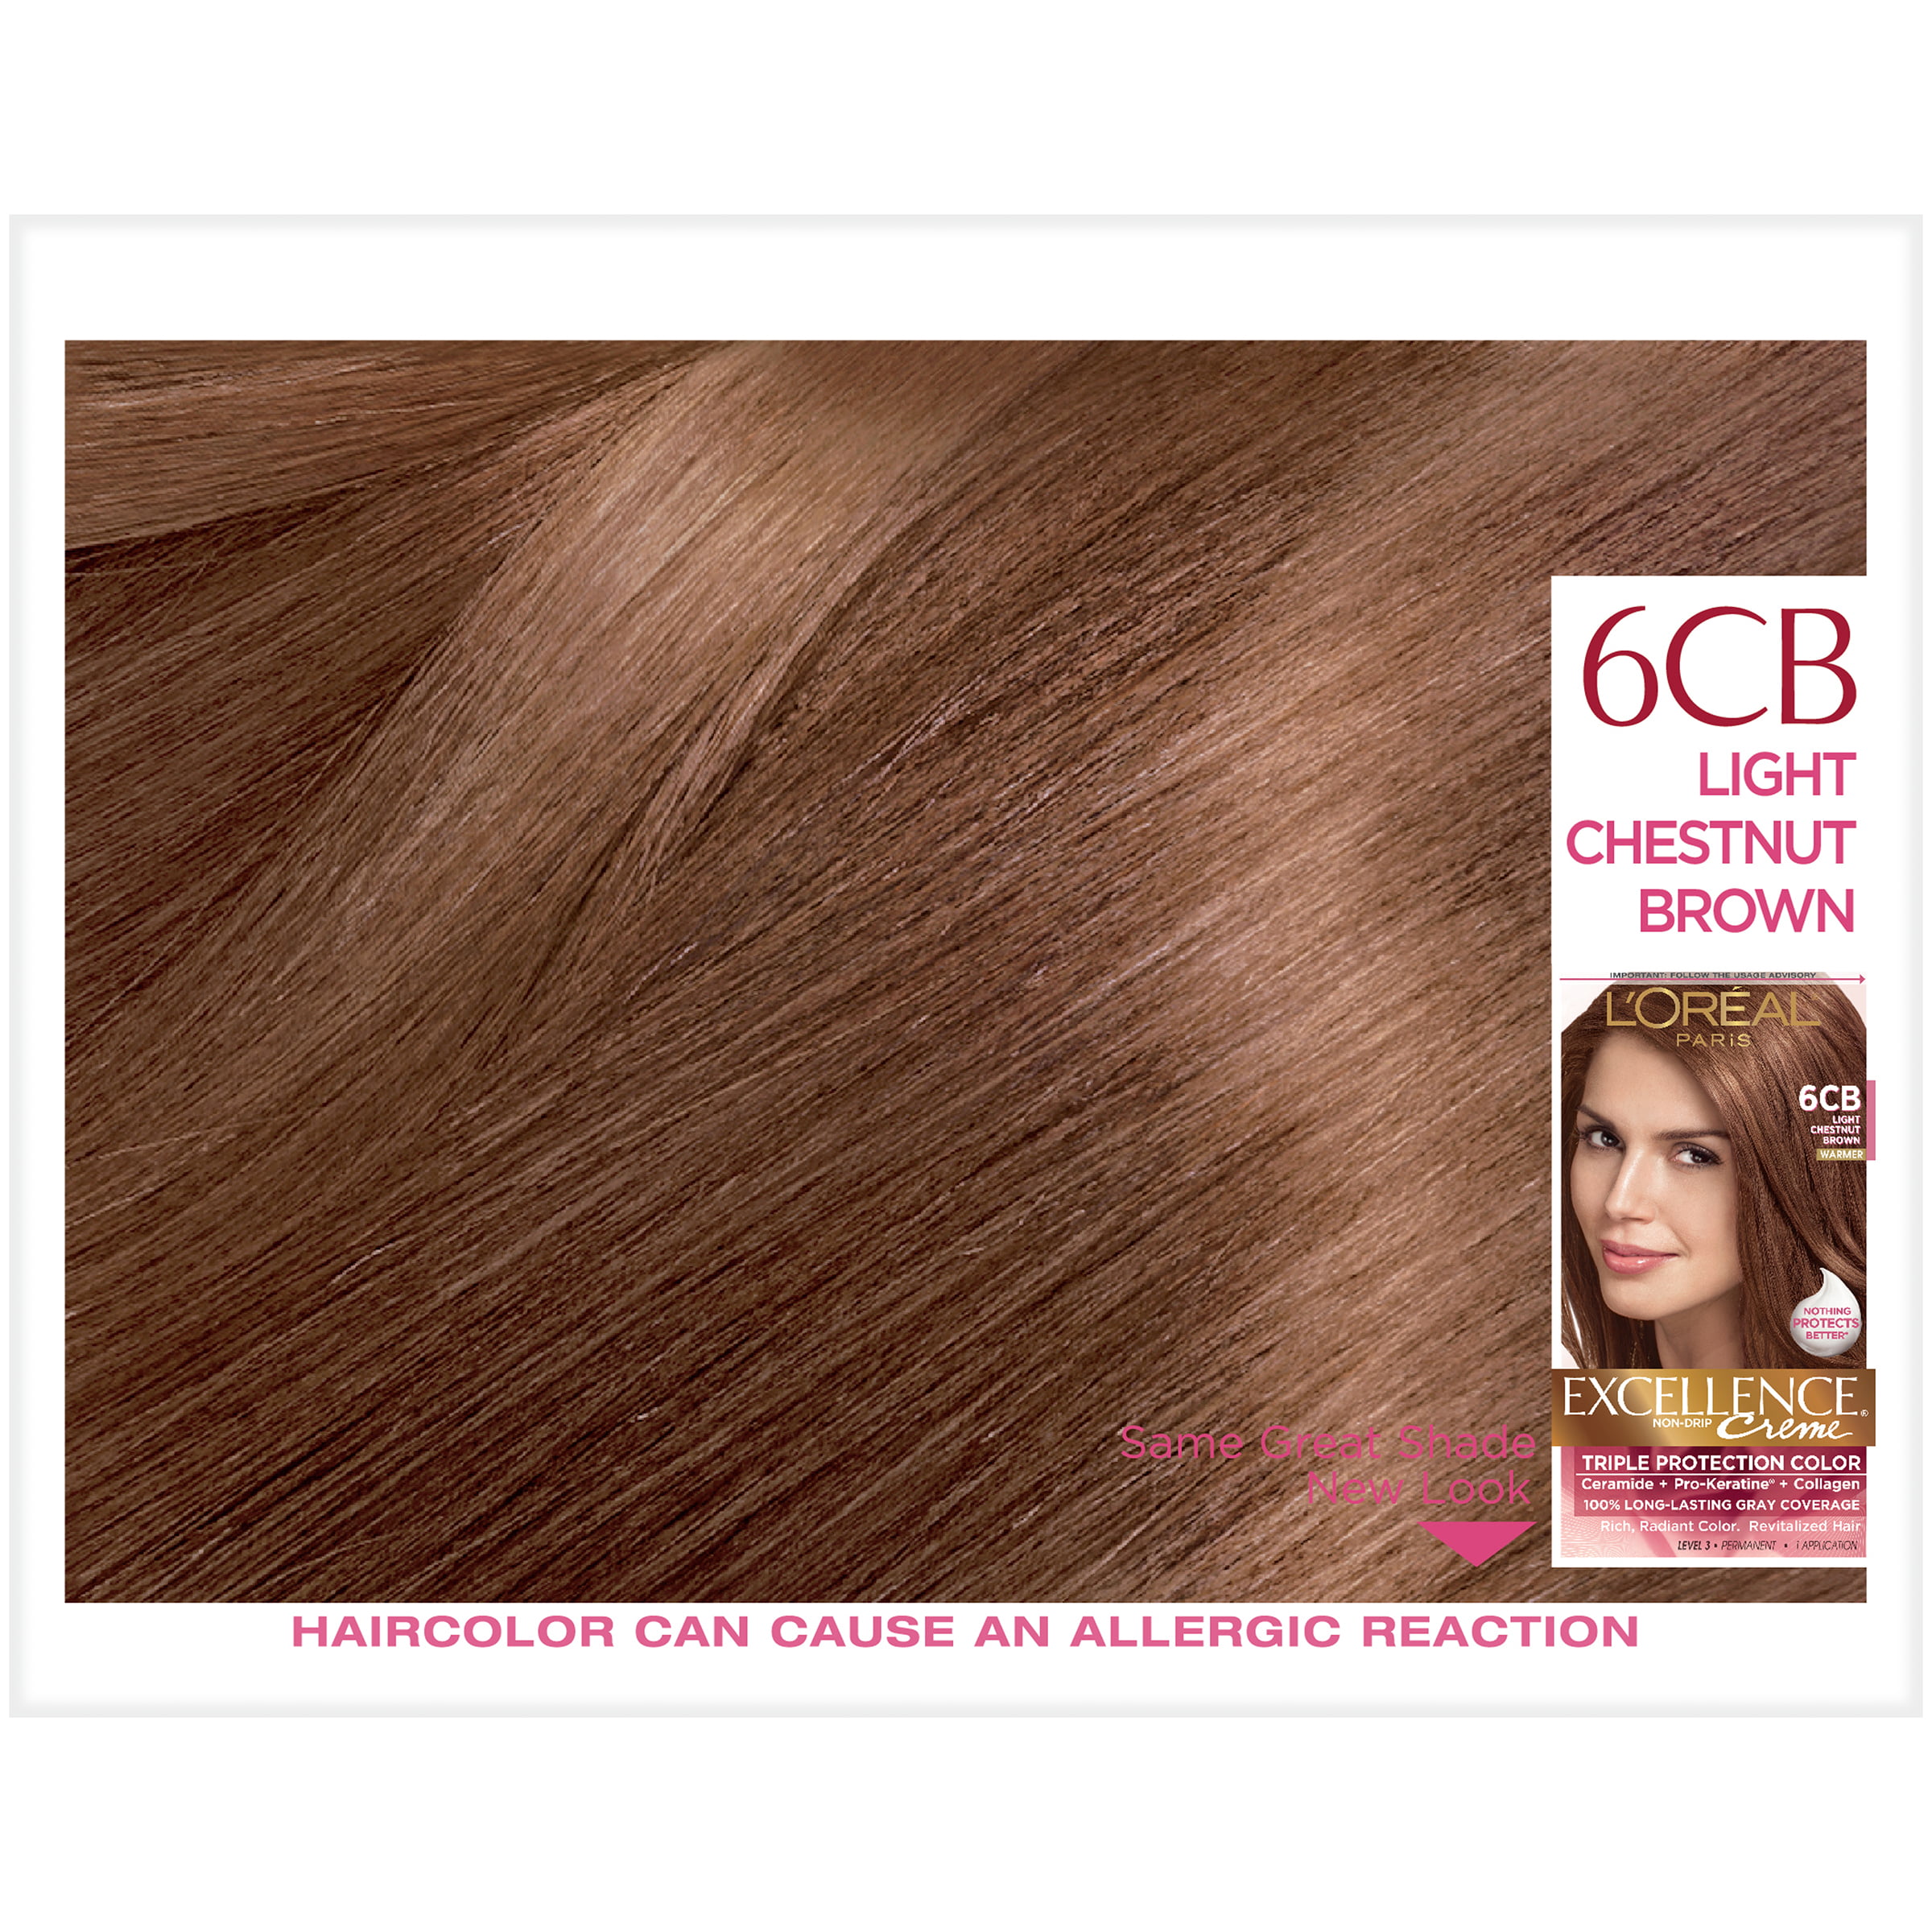 L'Oreal Paris Excellence Creme Permanent Triple Protection Hair Color, 6CB Light  Chestnut Brown, 1 kit - Walmart.com